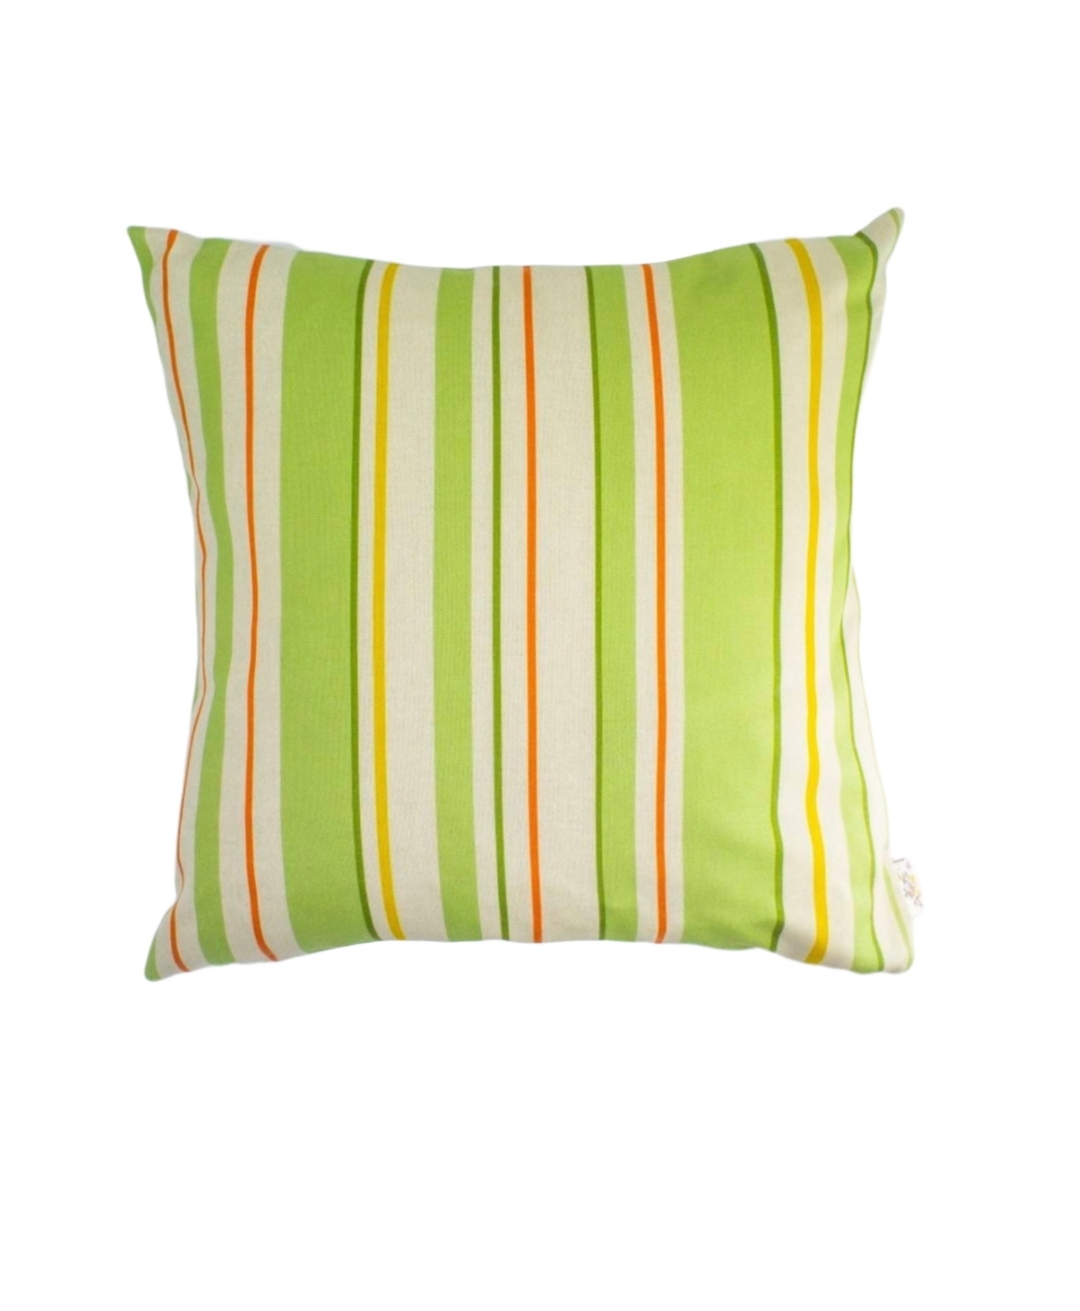 Decorative  Pillow, Floral Cotton Pillow, Vintage Style Pillow, 16x16" - $34.00